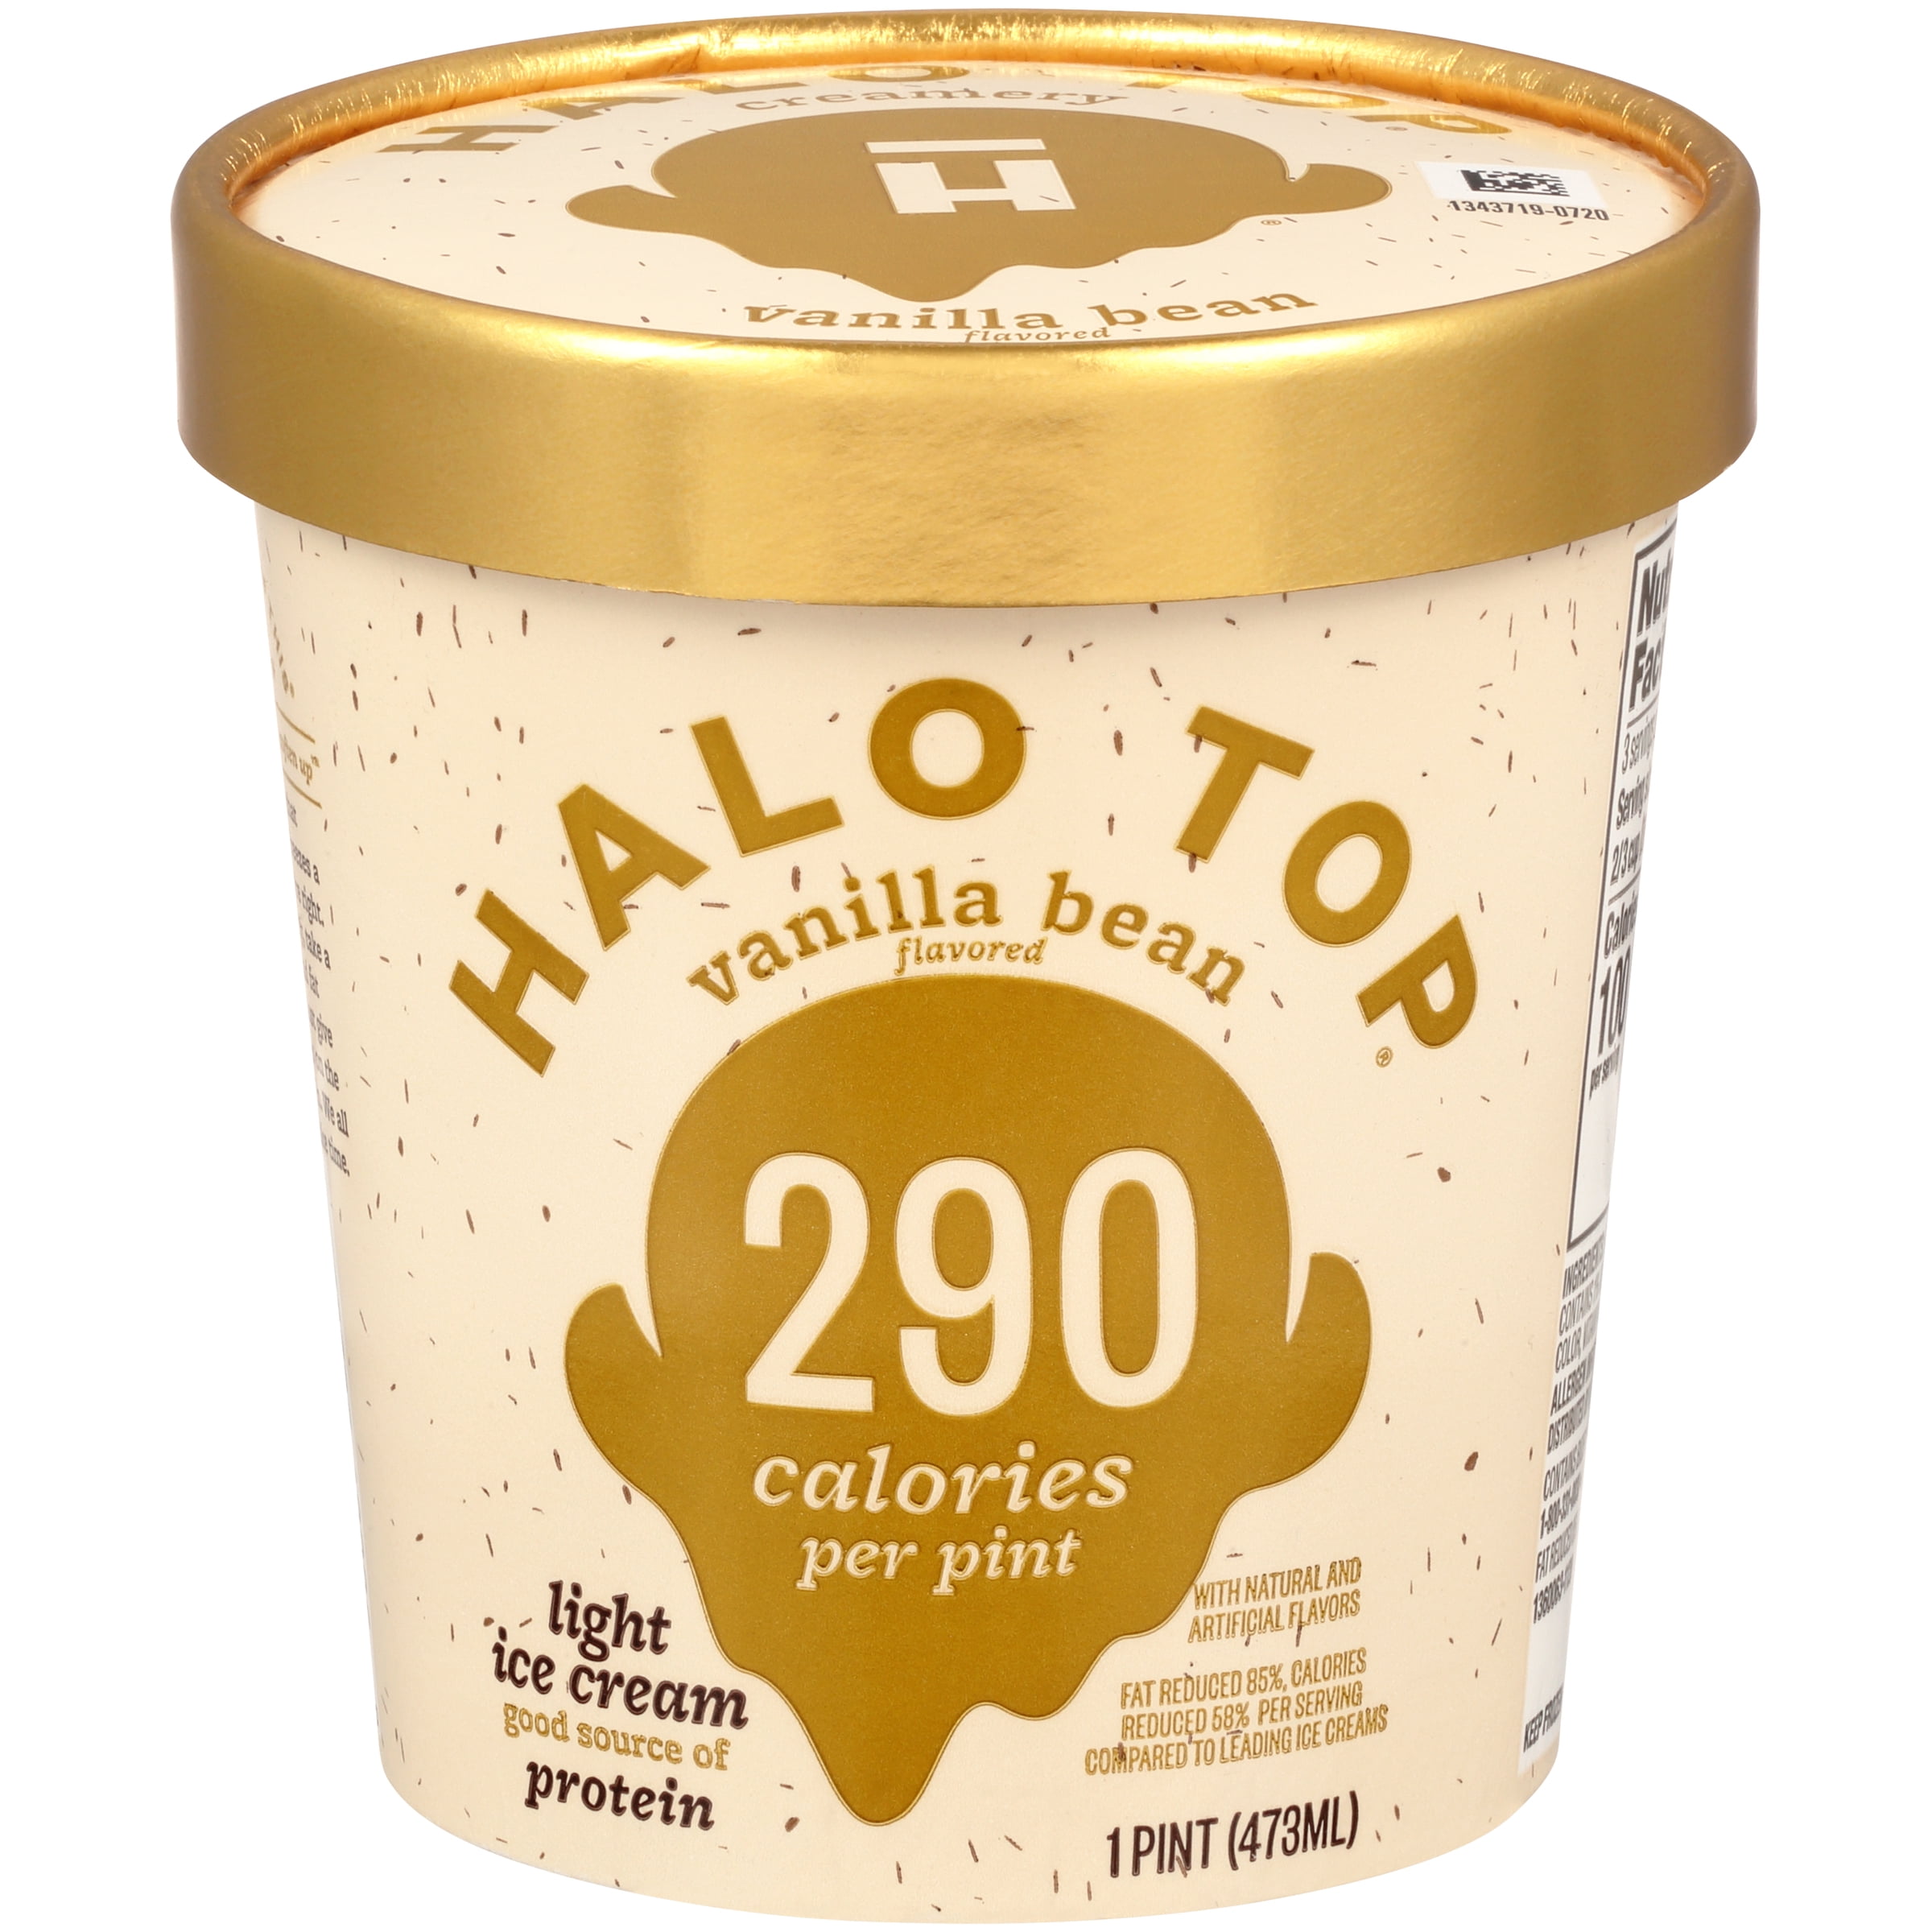 Halo Top LowCalorie Bean Ice Cream Pint, 16 fl oz - Walmart.com